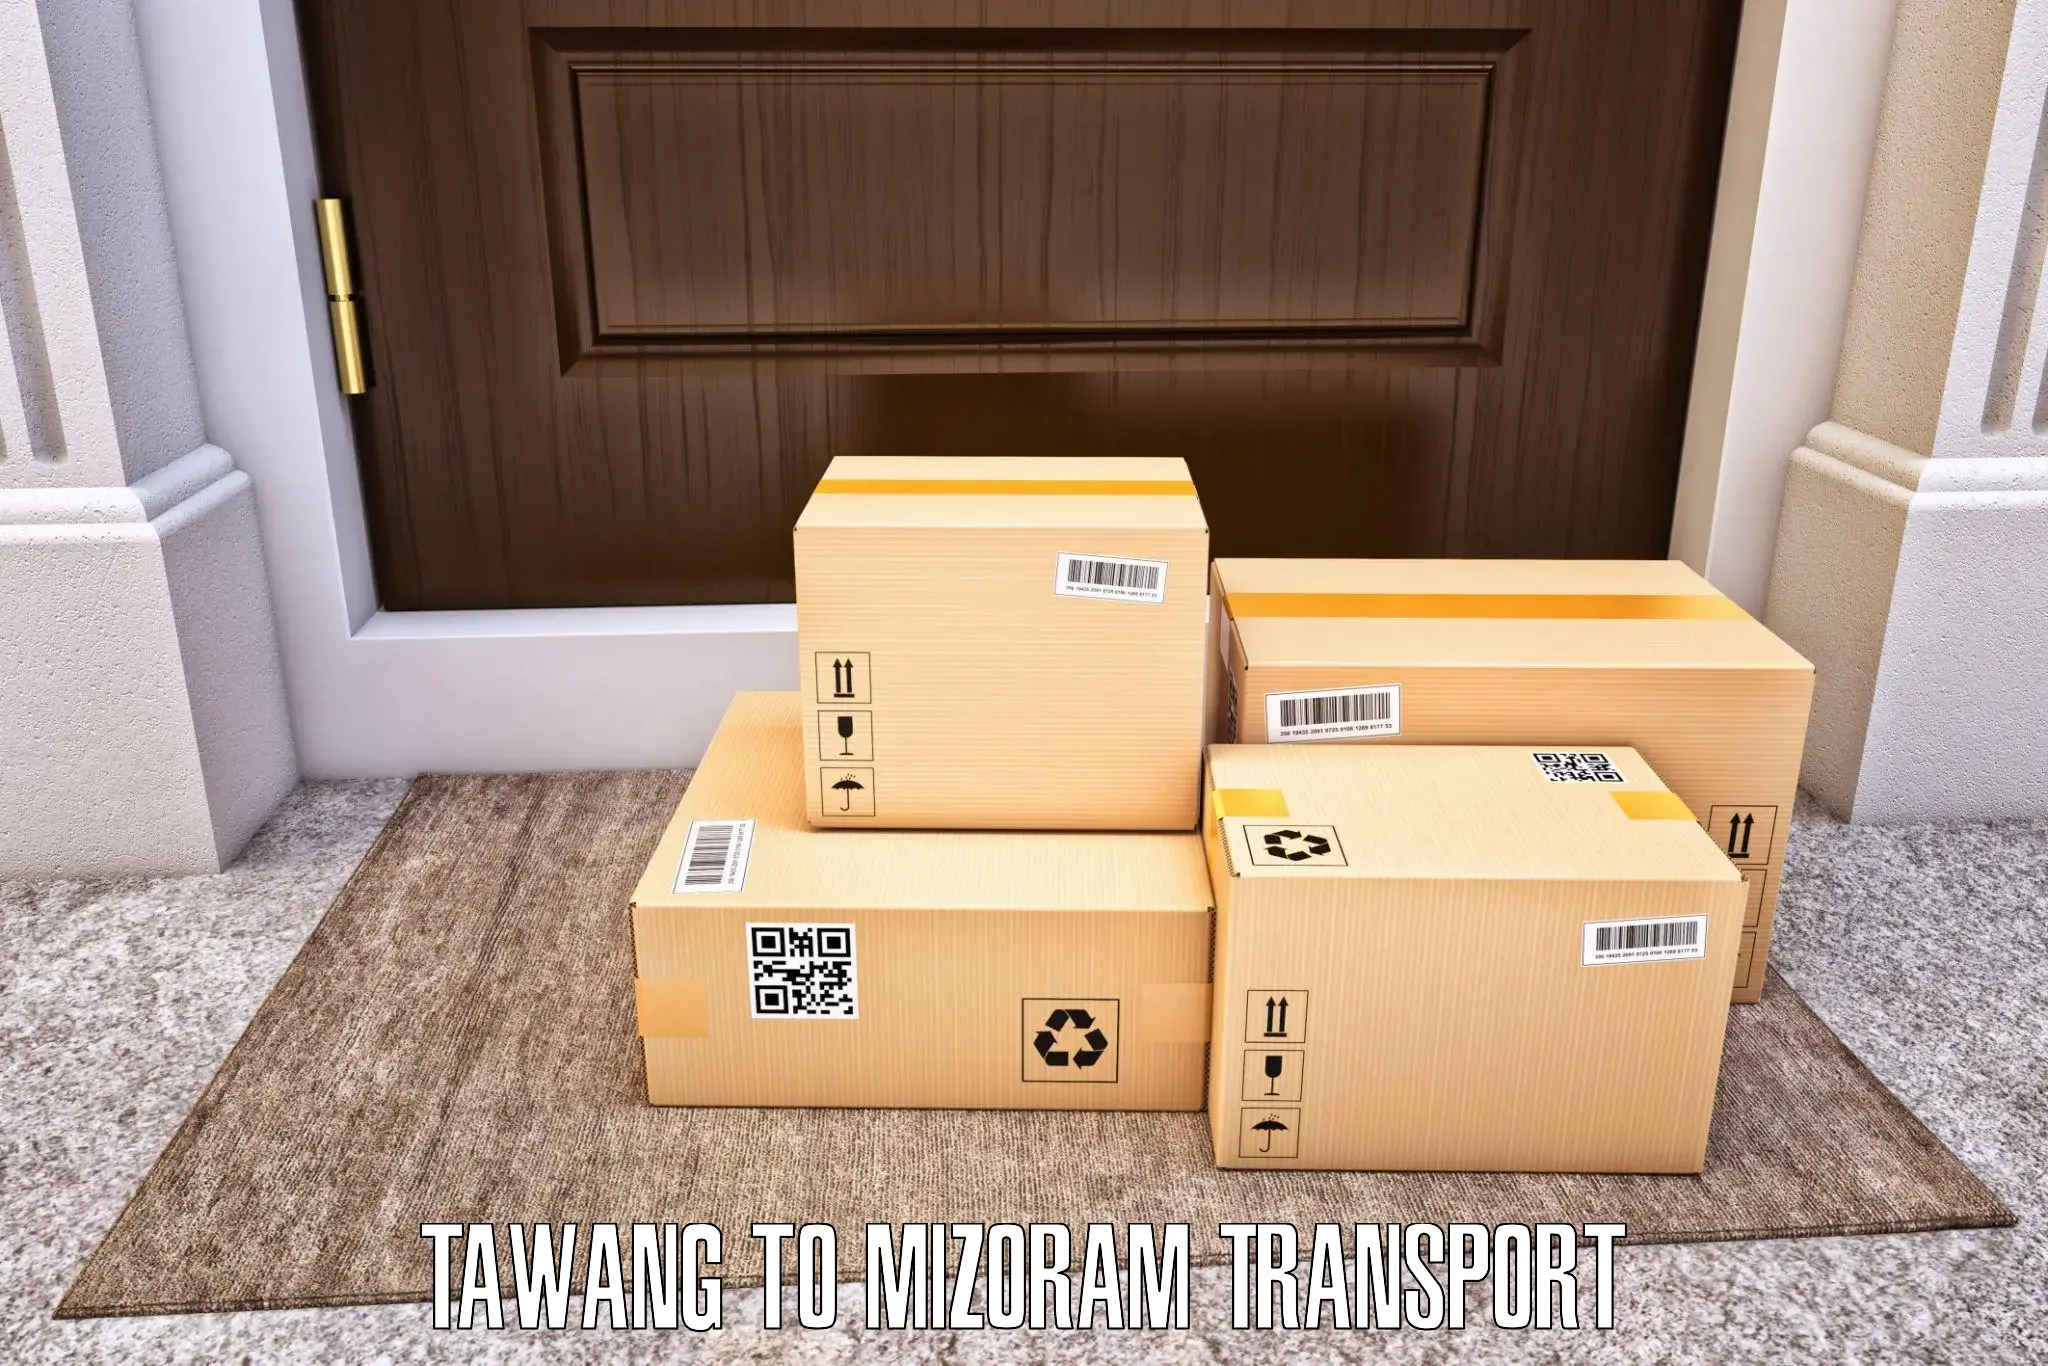 Online transport service Tawang to Mizoram